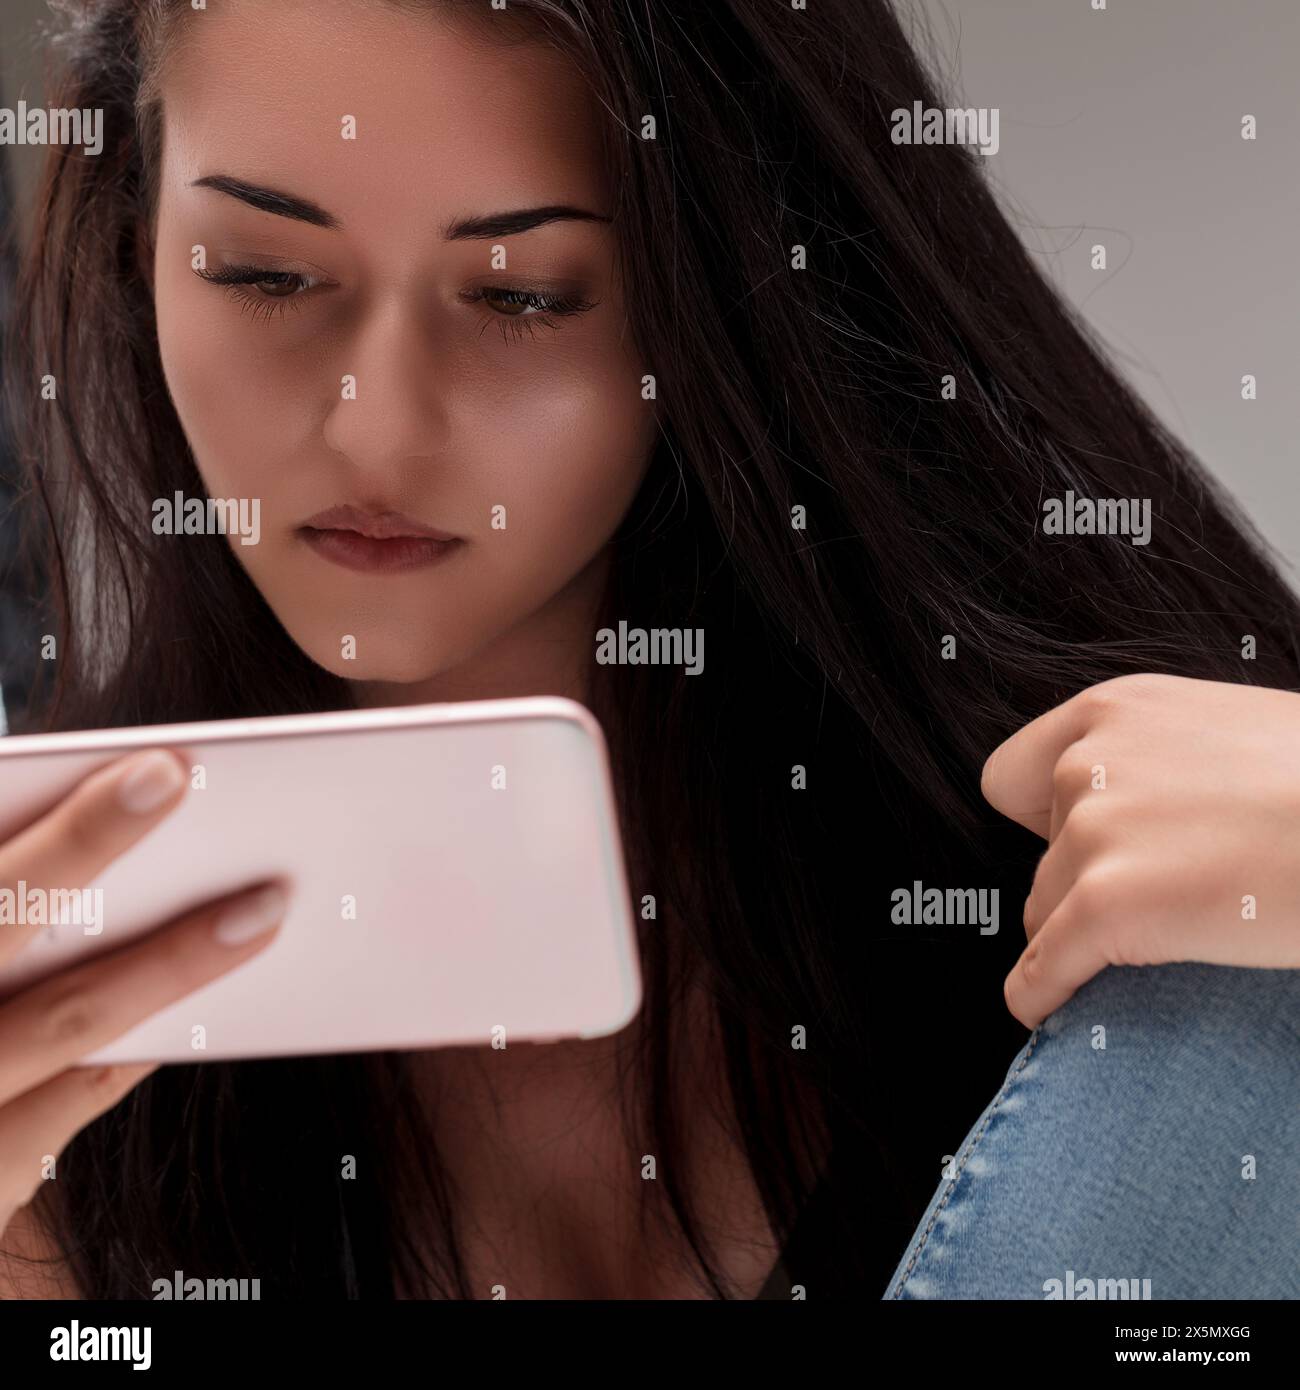 Der Blick der jungen Frau ist fest auf ihrem Handy und spiegelt einen Moment der persönlichen Reflexion und der digitalen Interaktion wider Stockfoto